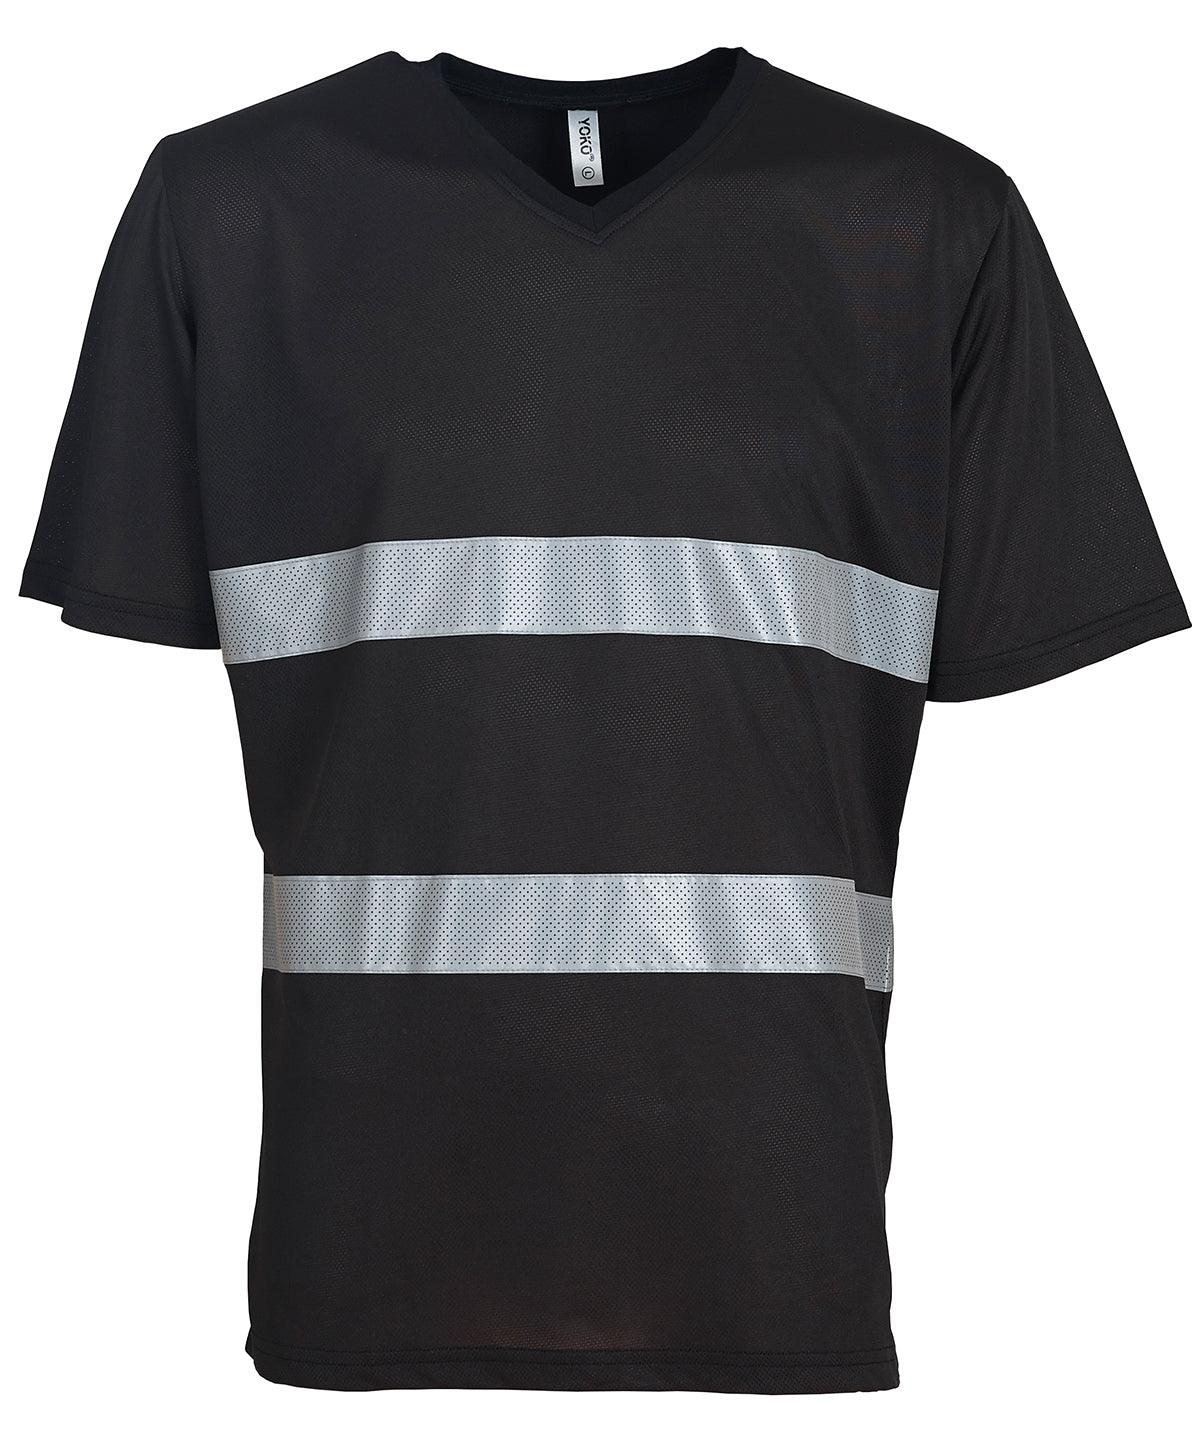 Black - Hi-vis top cool super light v-neck t-shirt (HVJ910) T-Shirts Yoko Plus Sizes, Safetywear, Workwear Schoolwear Centres